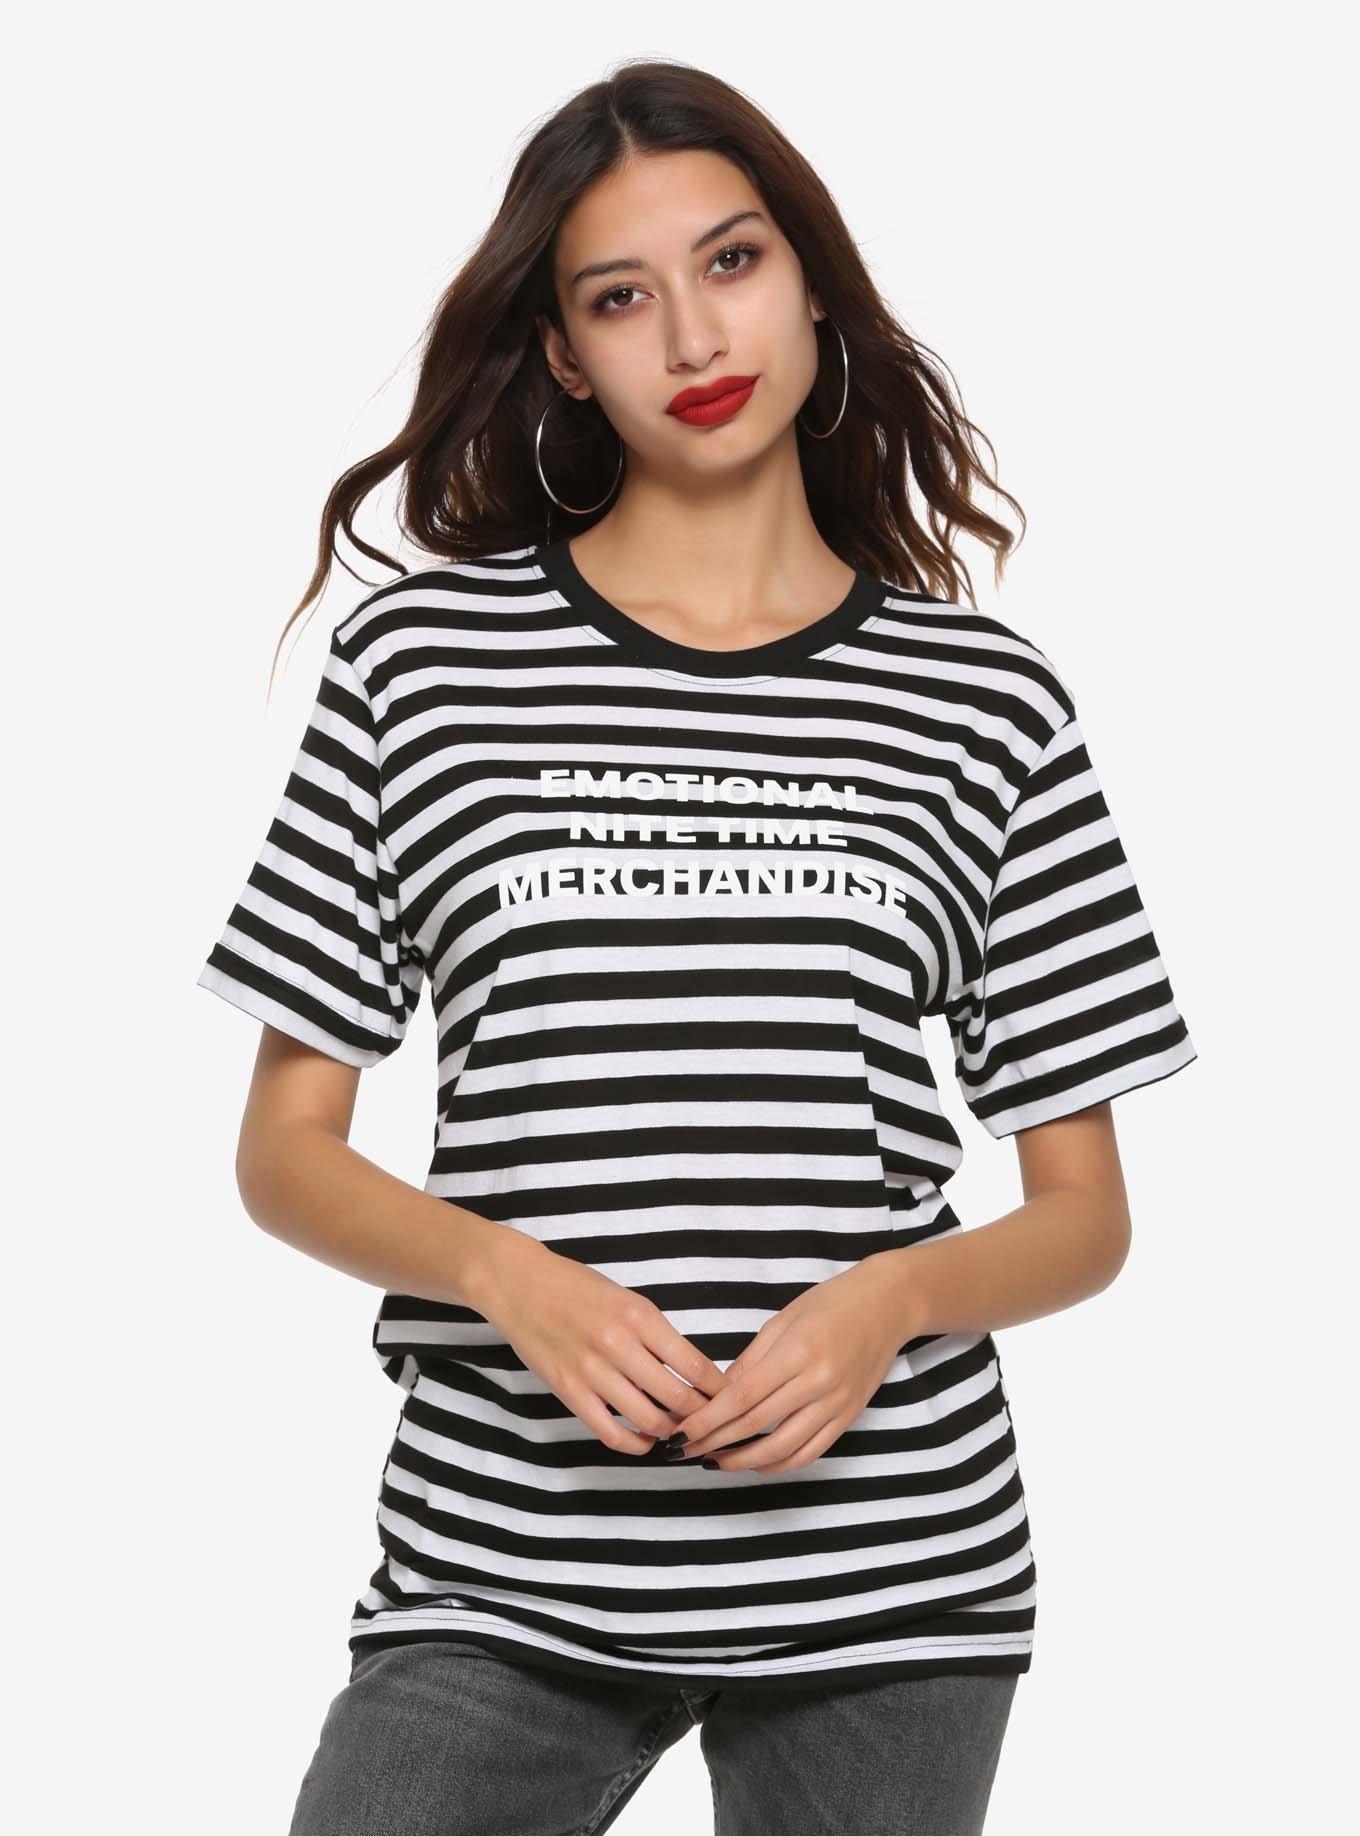 Emo Nite Emotional Nite Time Merchandise Striped Girls T-Shirt, WHITE, hi-res